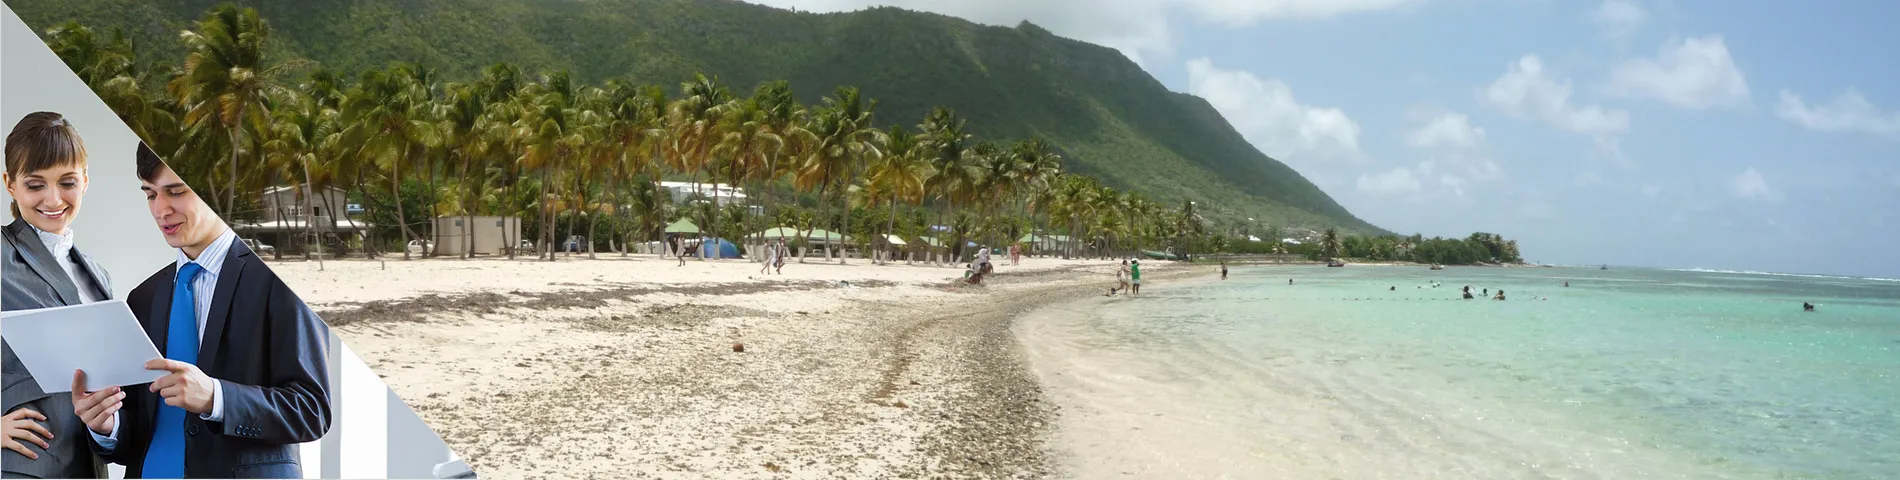 Guadeloupe - 